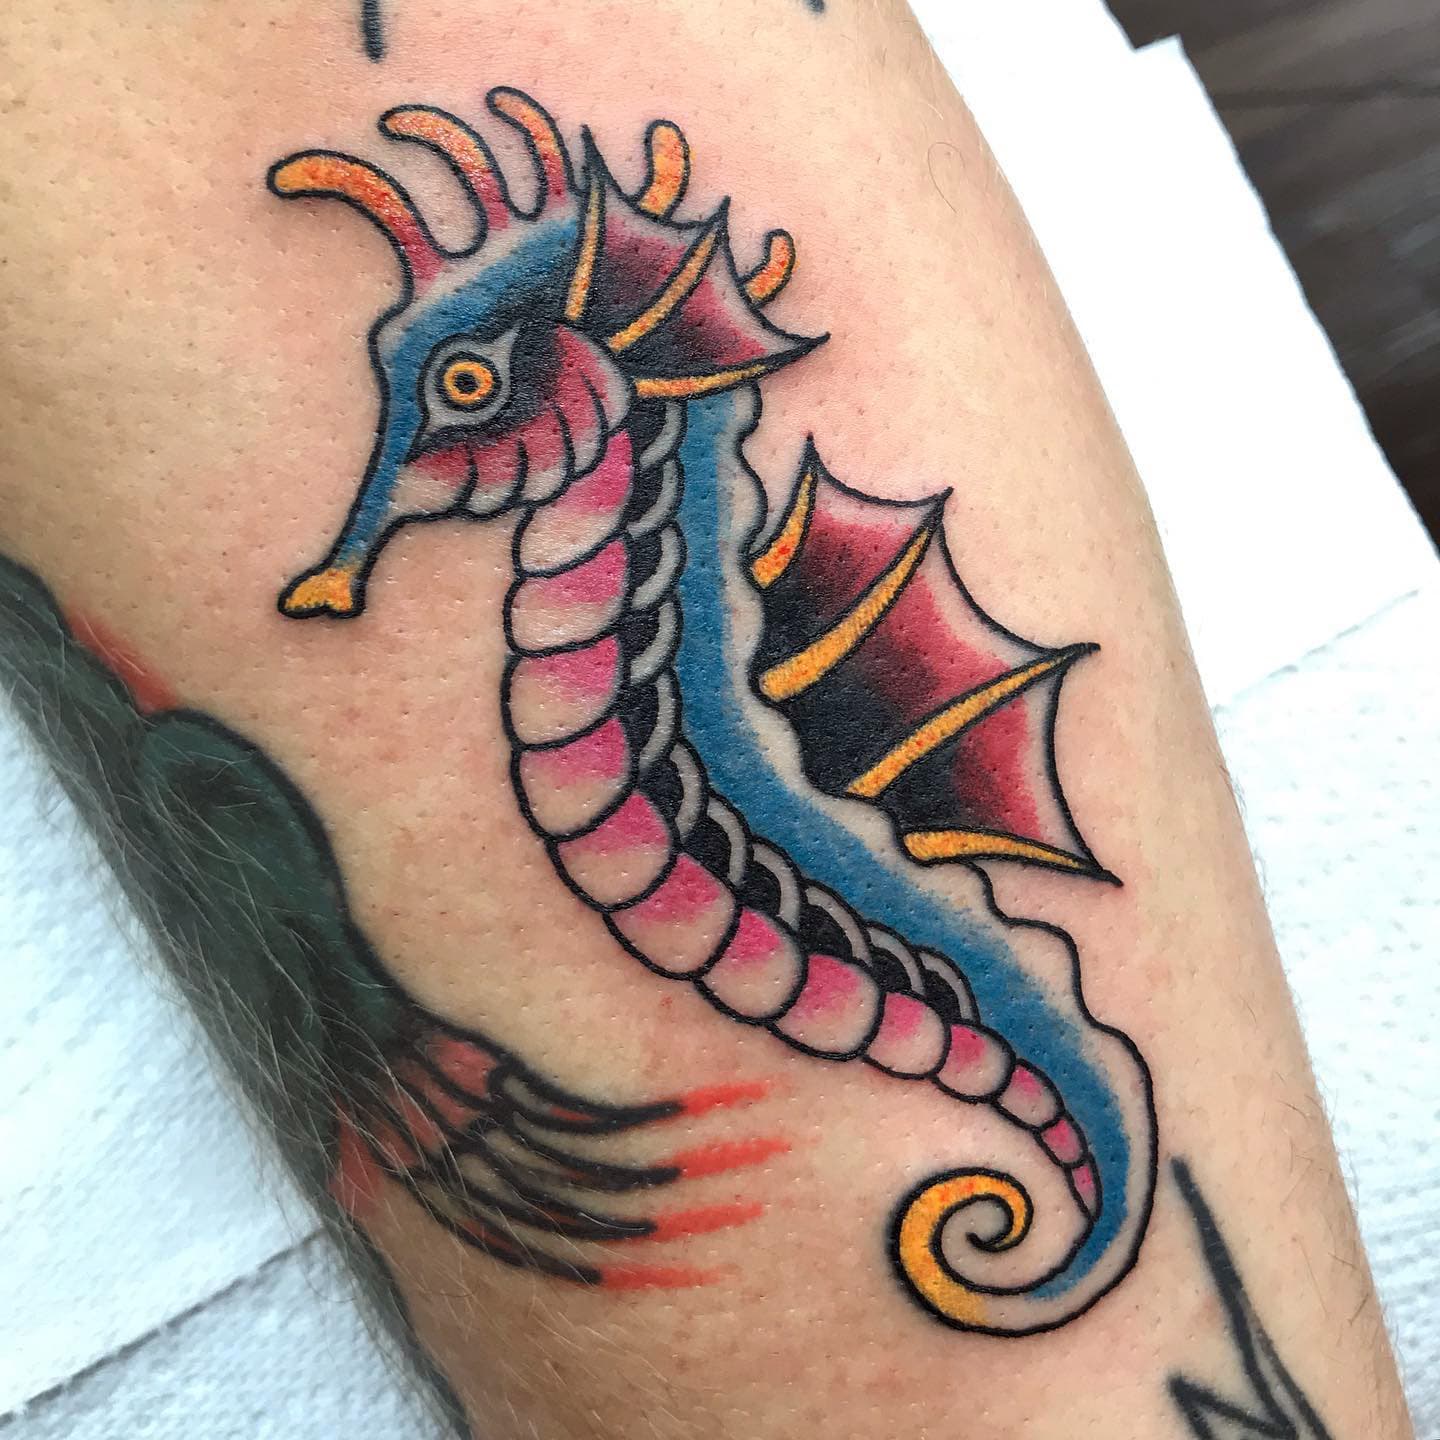 Seahorse tattoo ideas 12